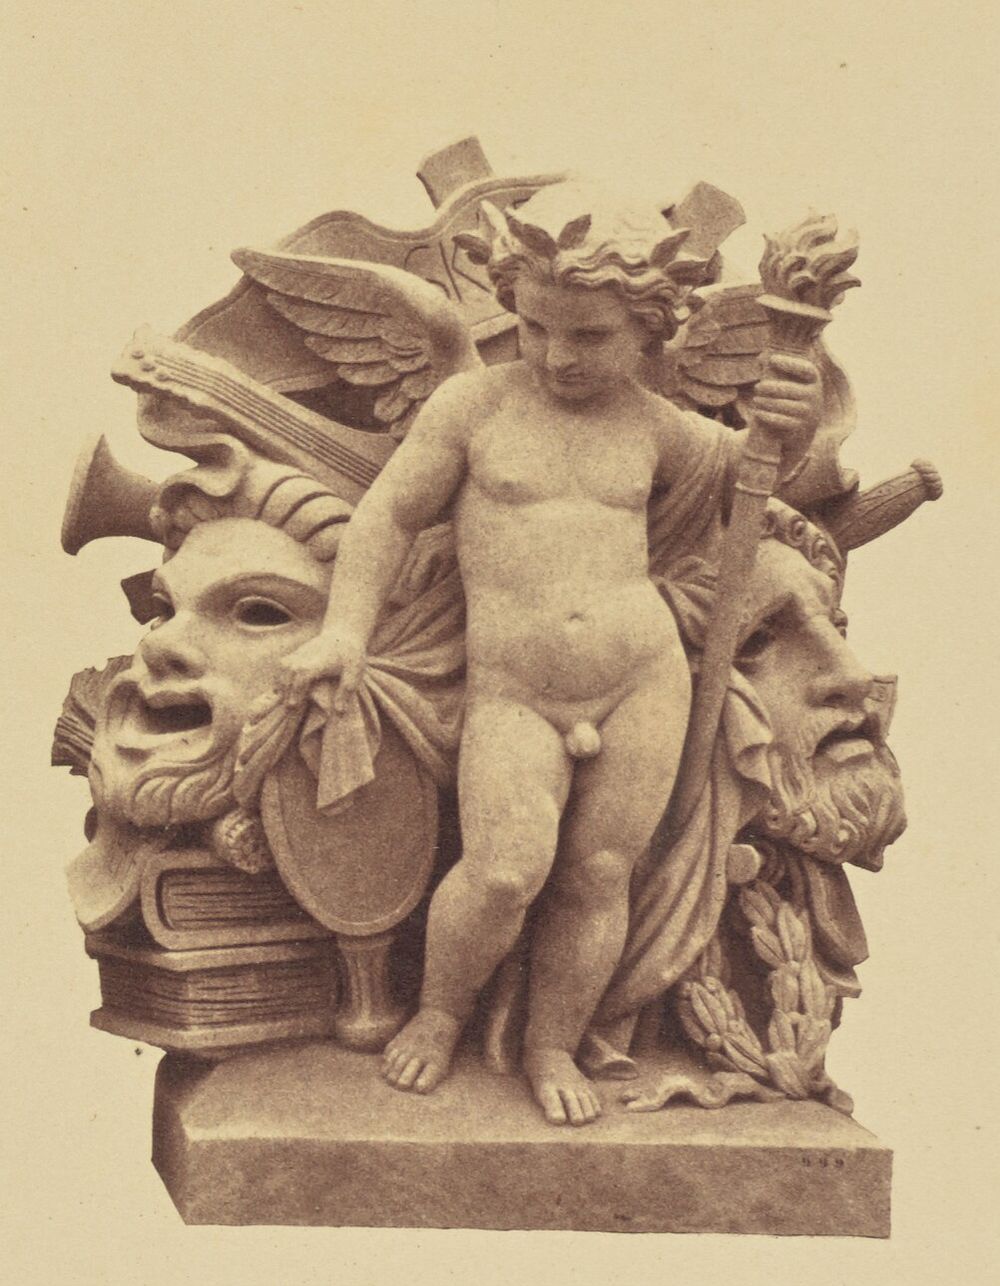 "Le Théâtre", Sculpture by Charles Capellaro, Decoration of the Louvre, Paris by Édouard Baldus